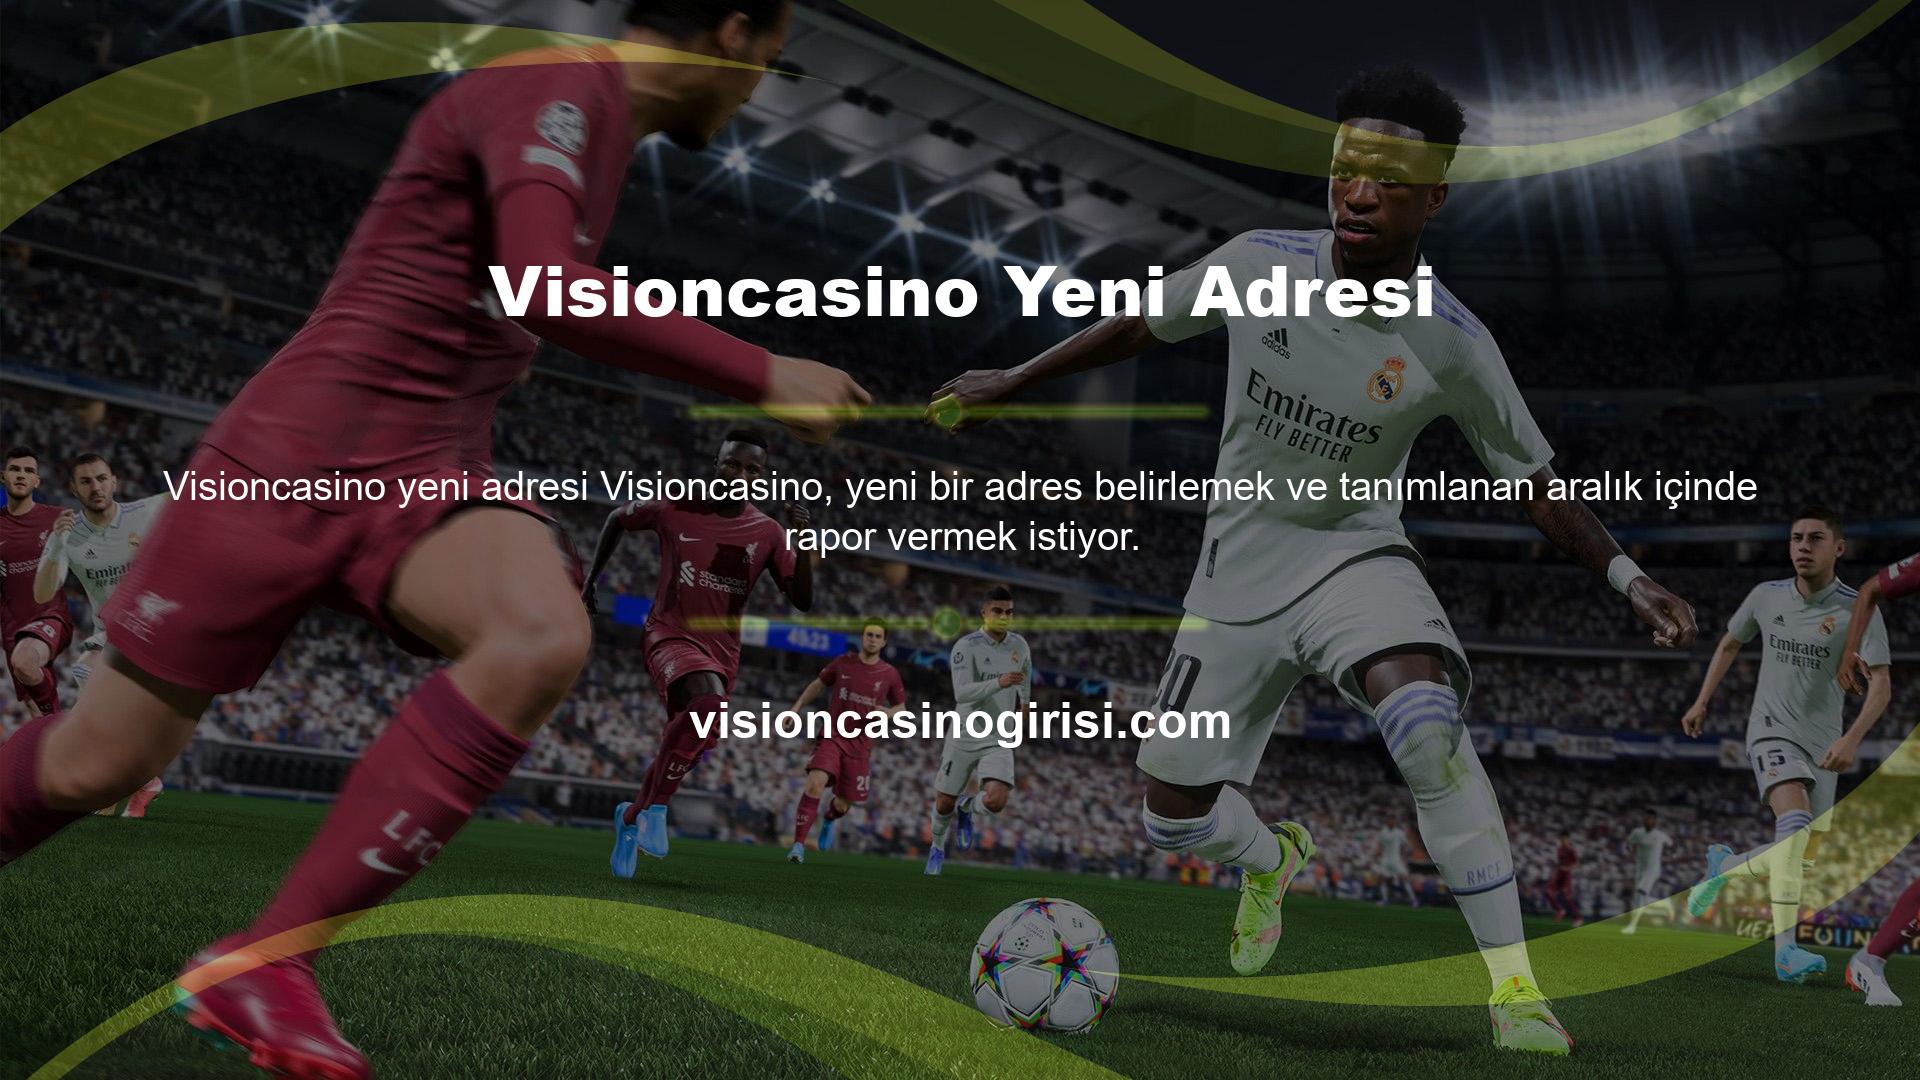 Visioncasino Yeni Adresi